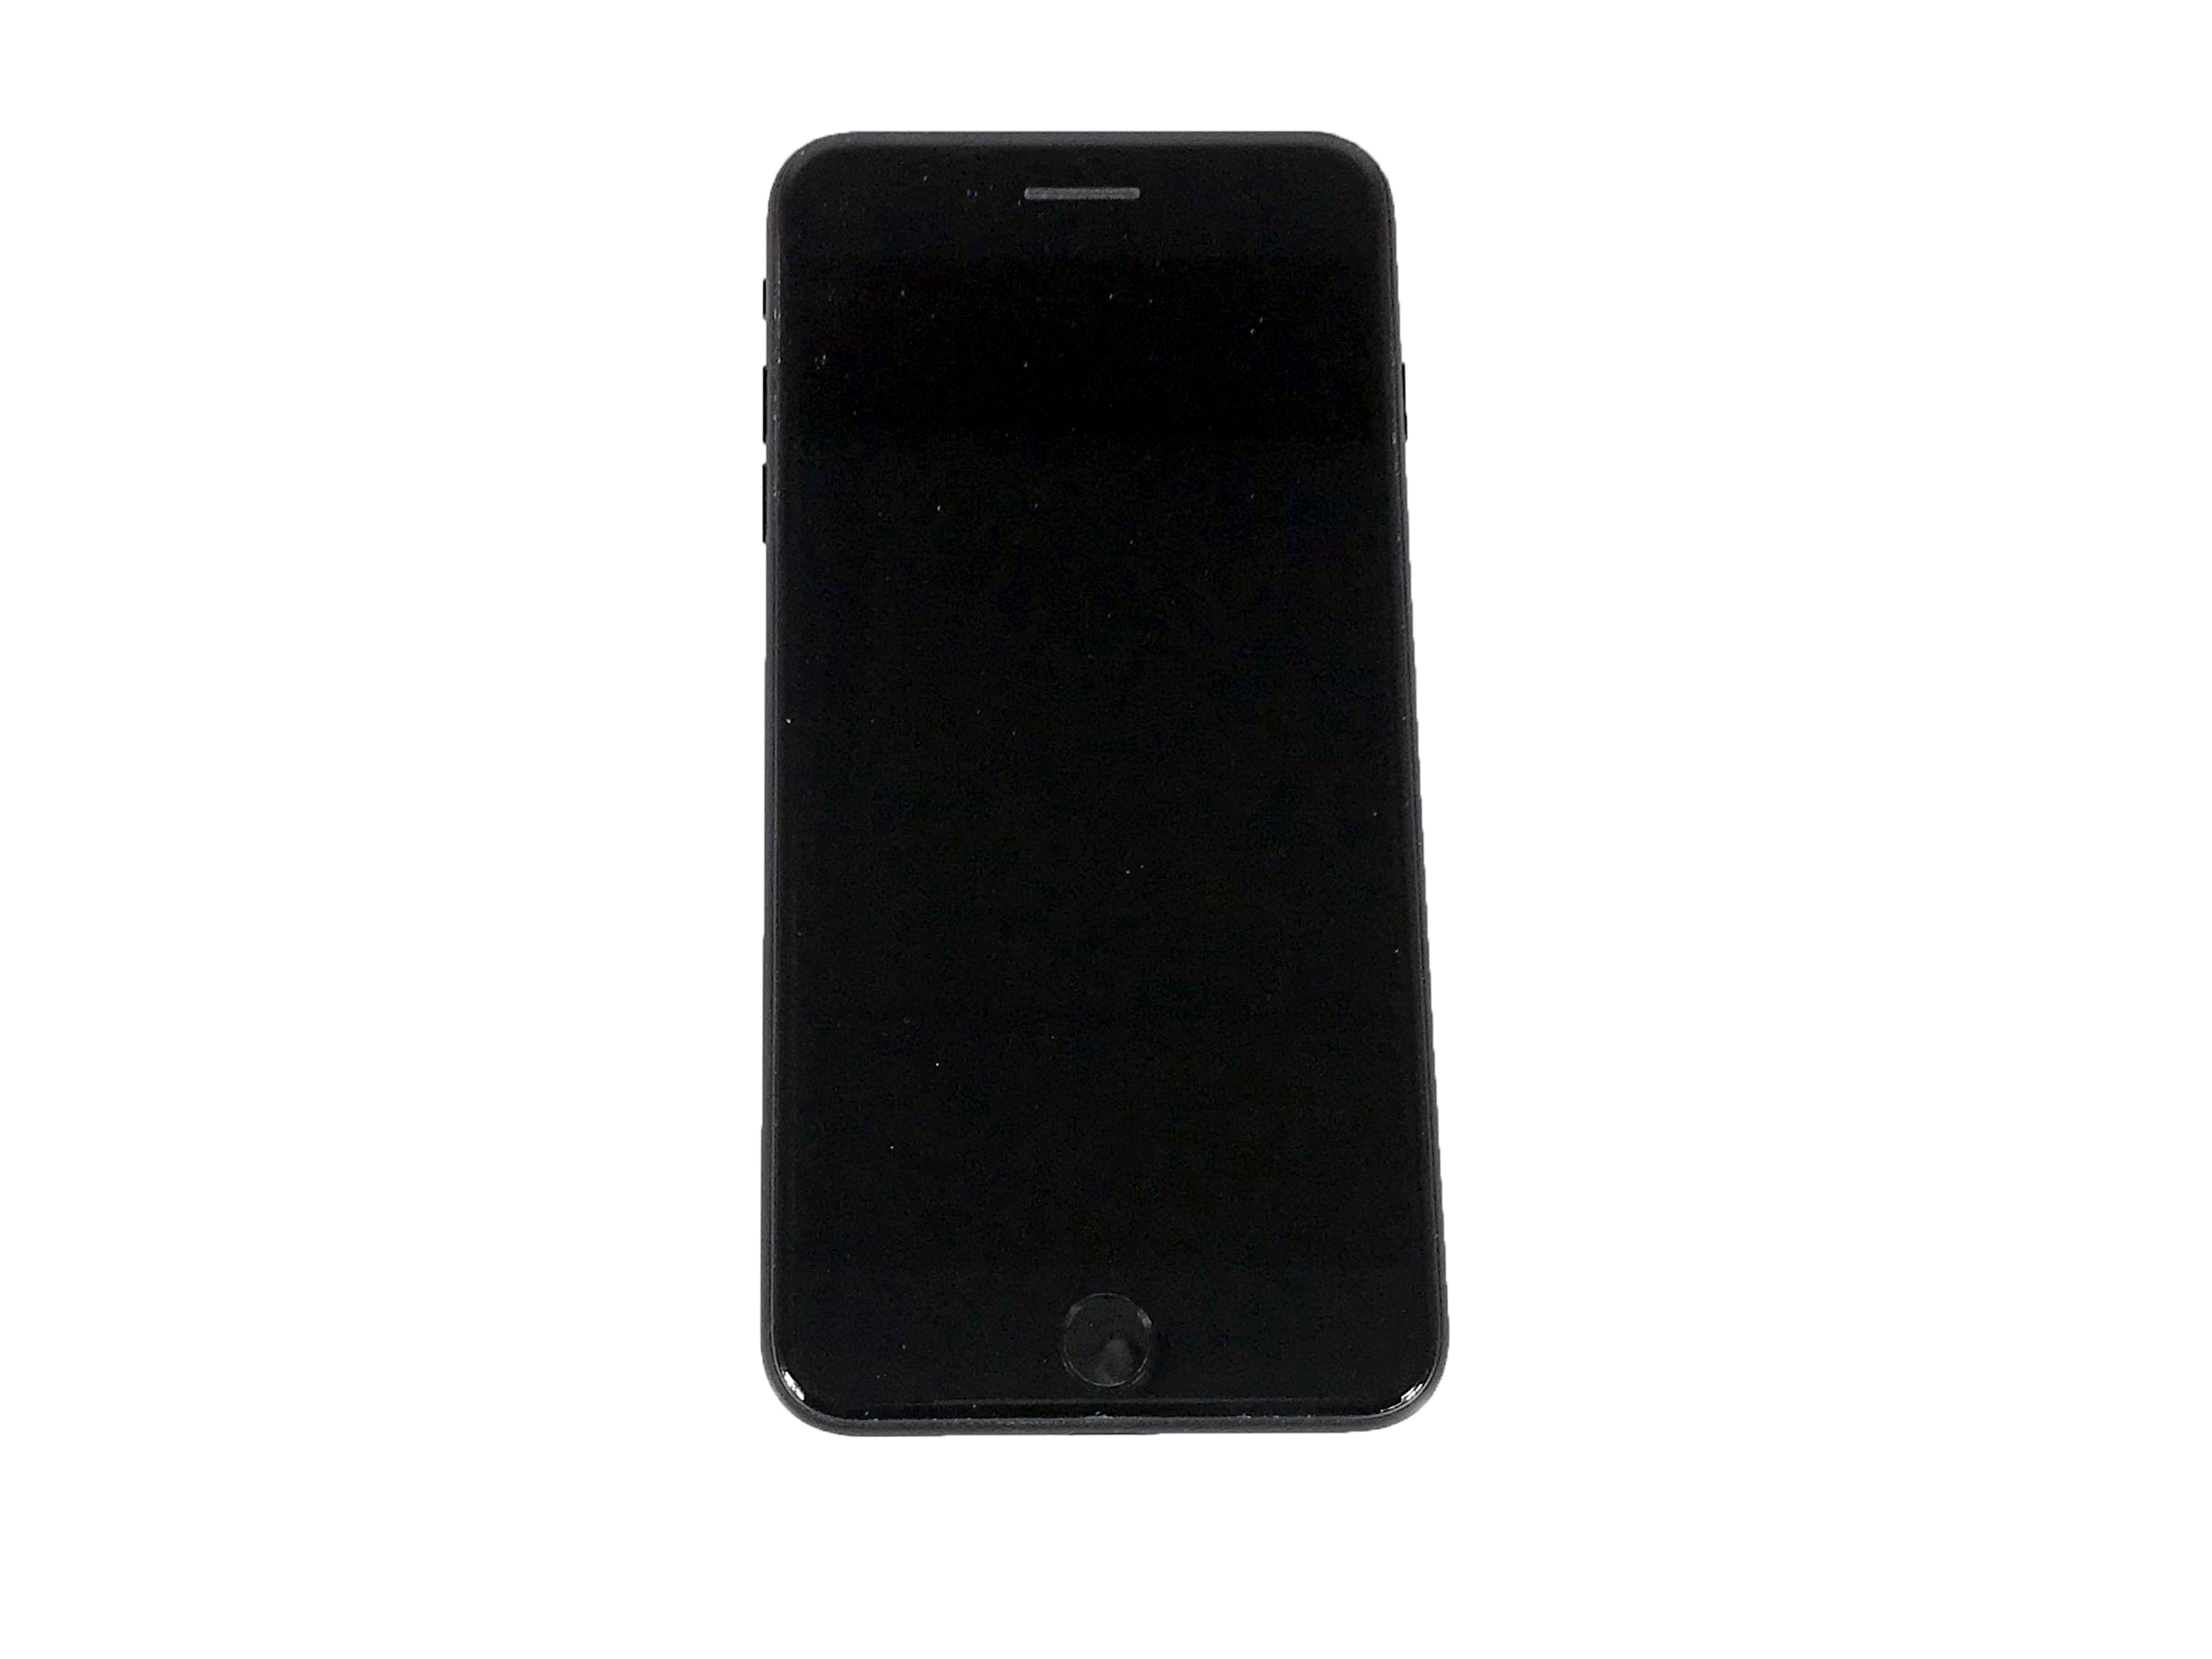 Apple iPhone 7 Plus 128GB 5.5in Black